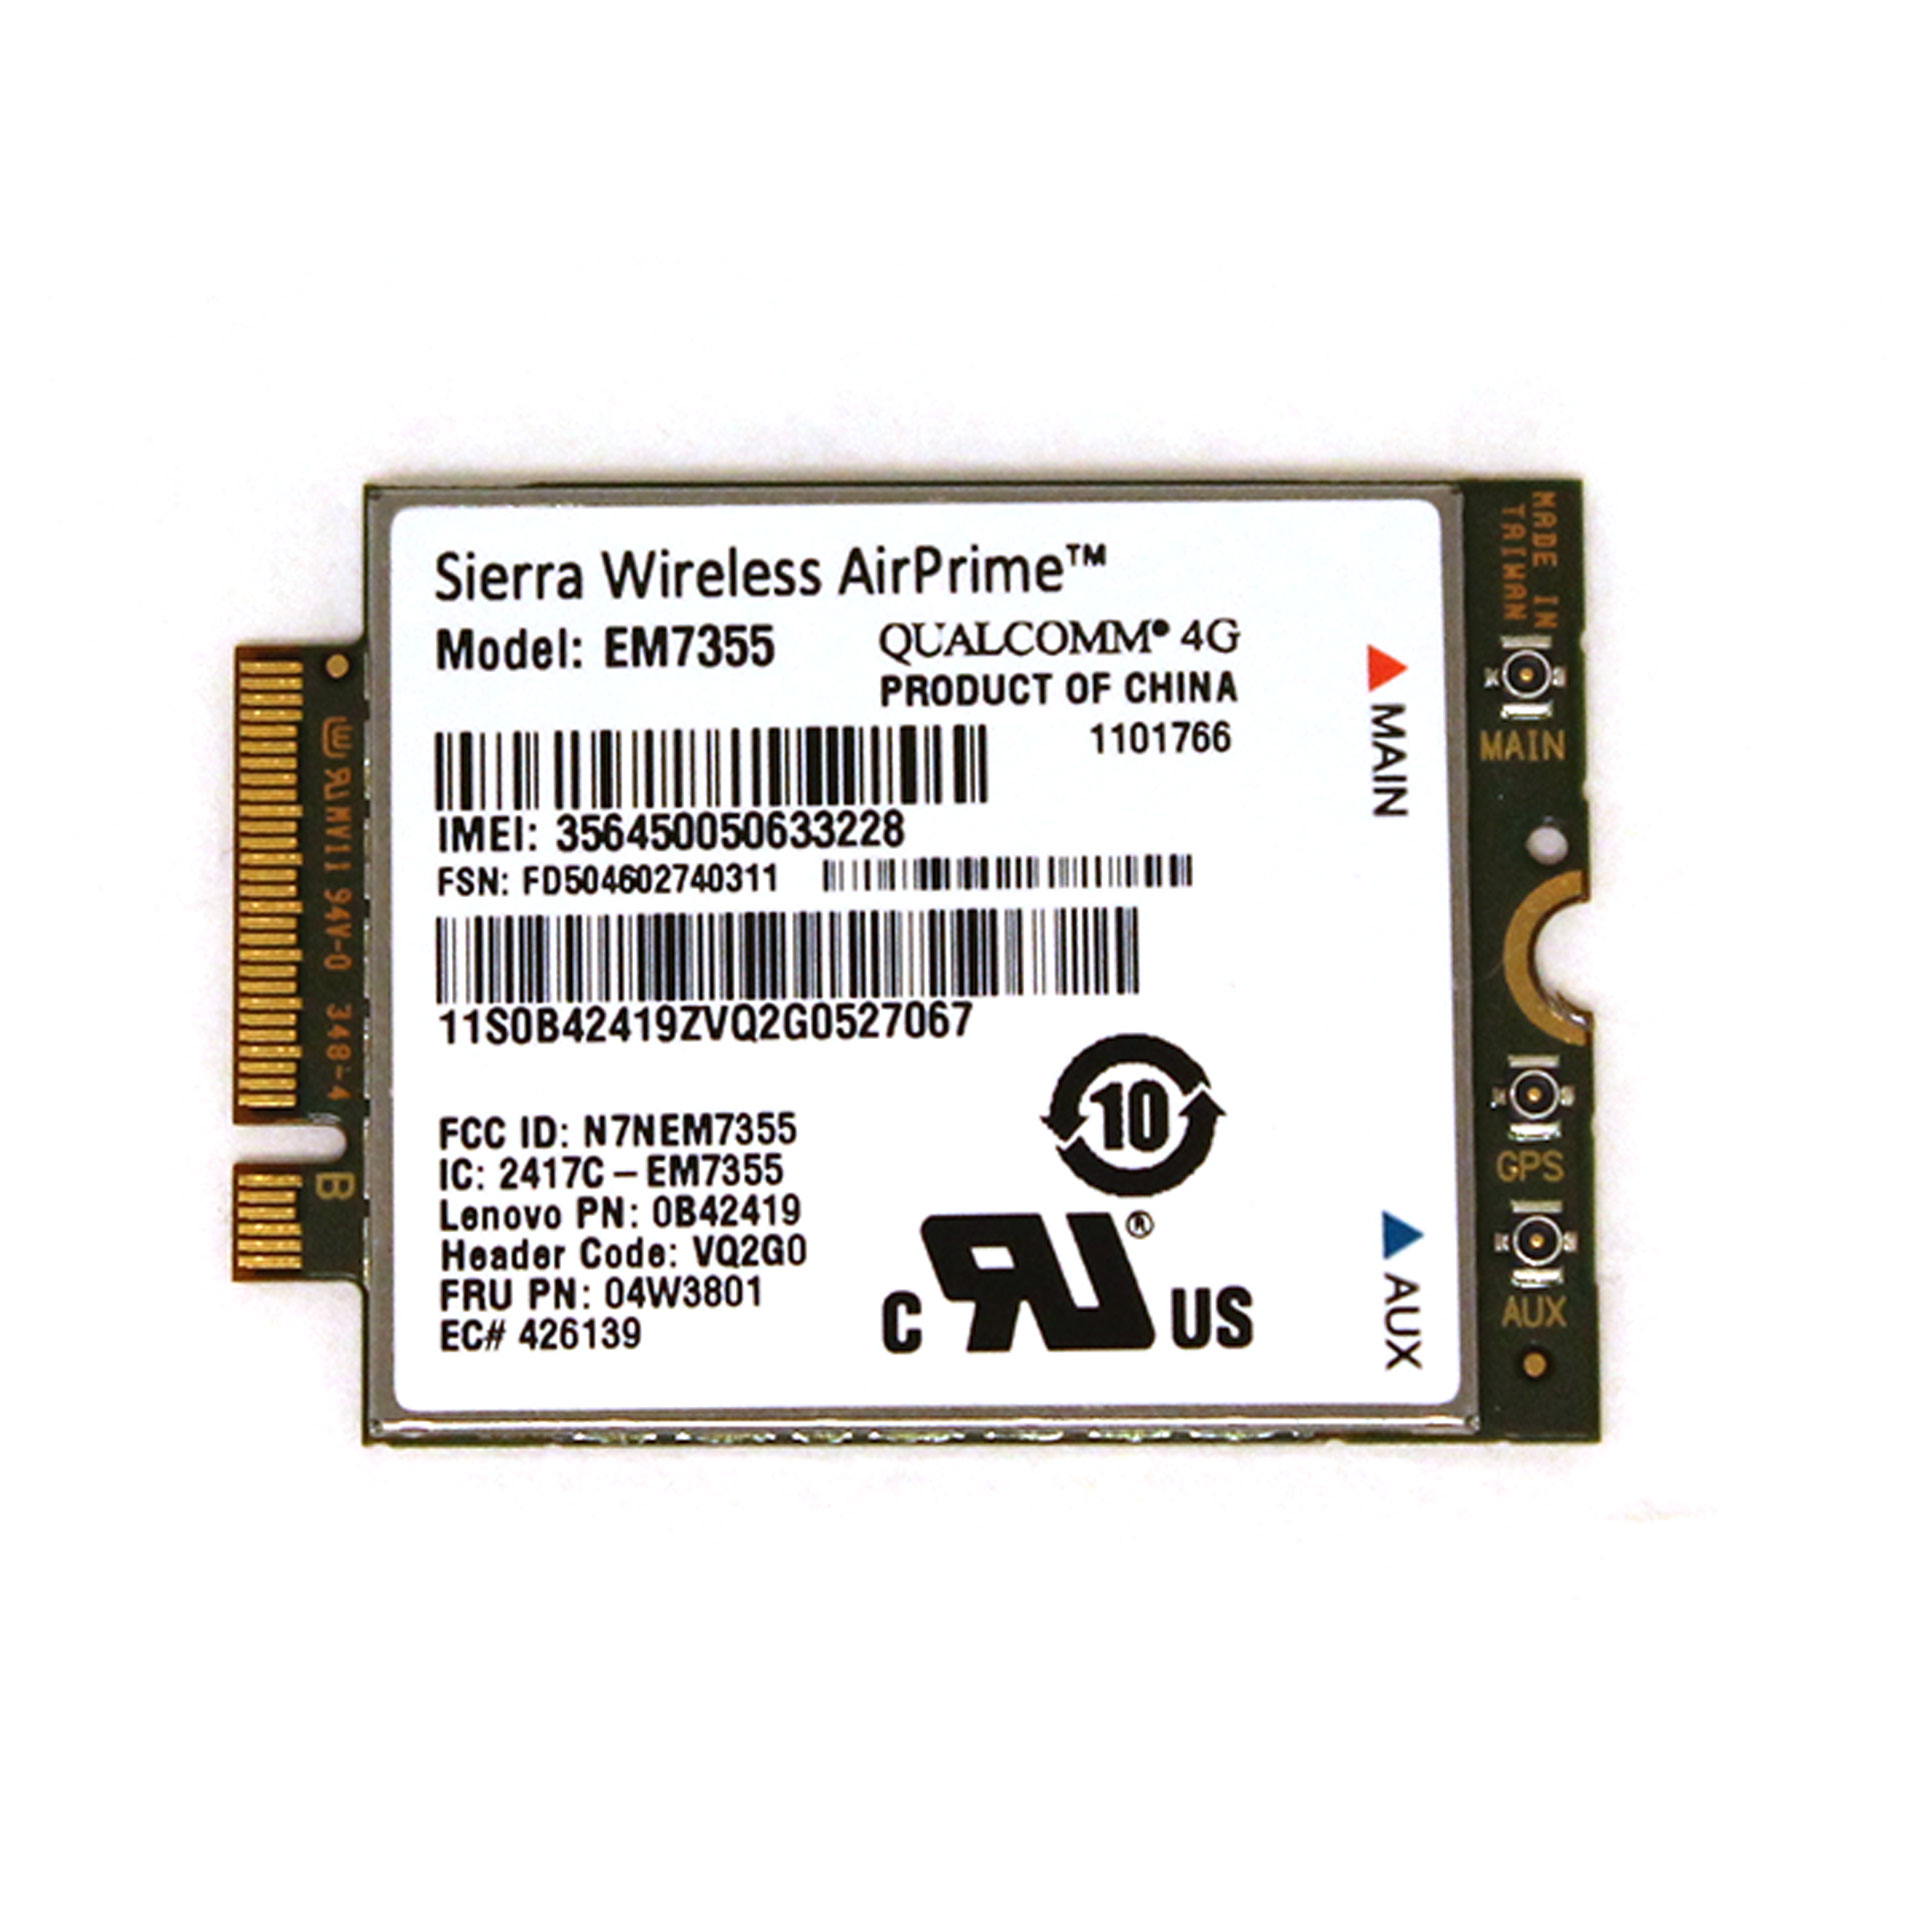 Lenovo/Sierra Wireless AirPrime EM7355 wireless modem 0B42419